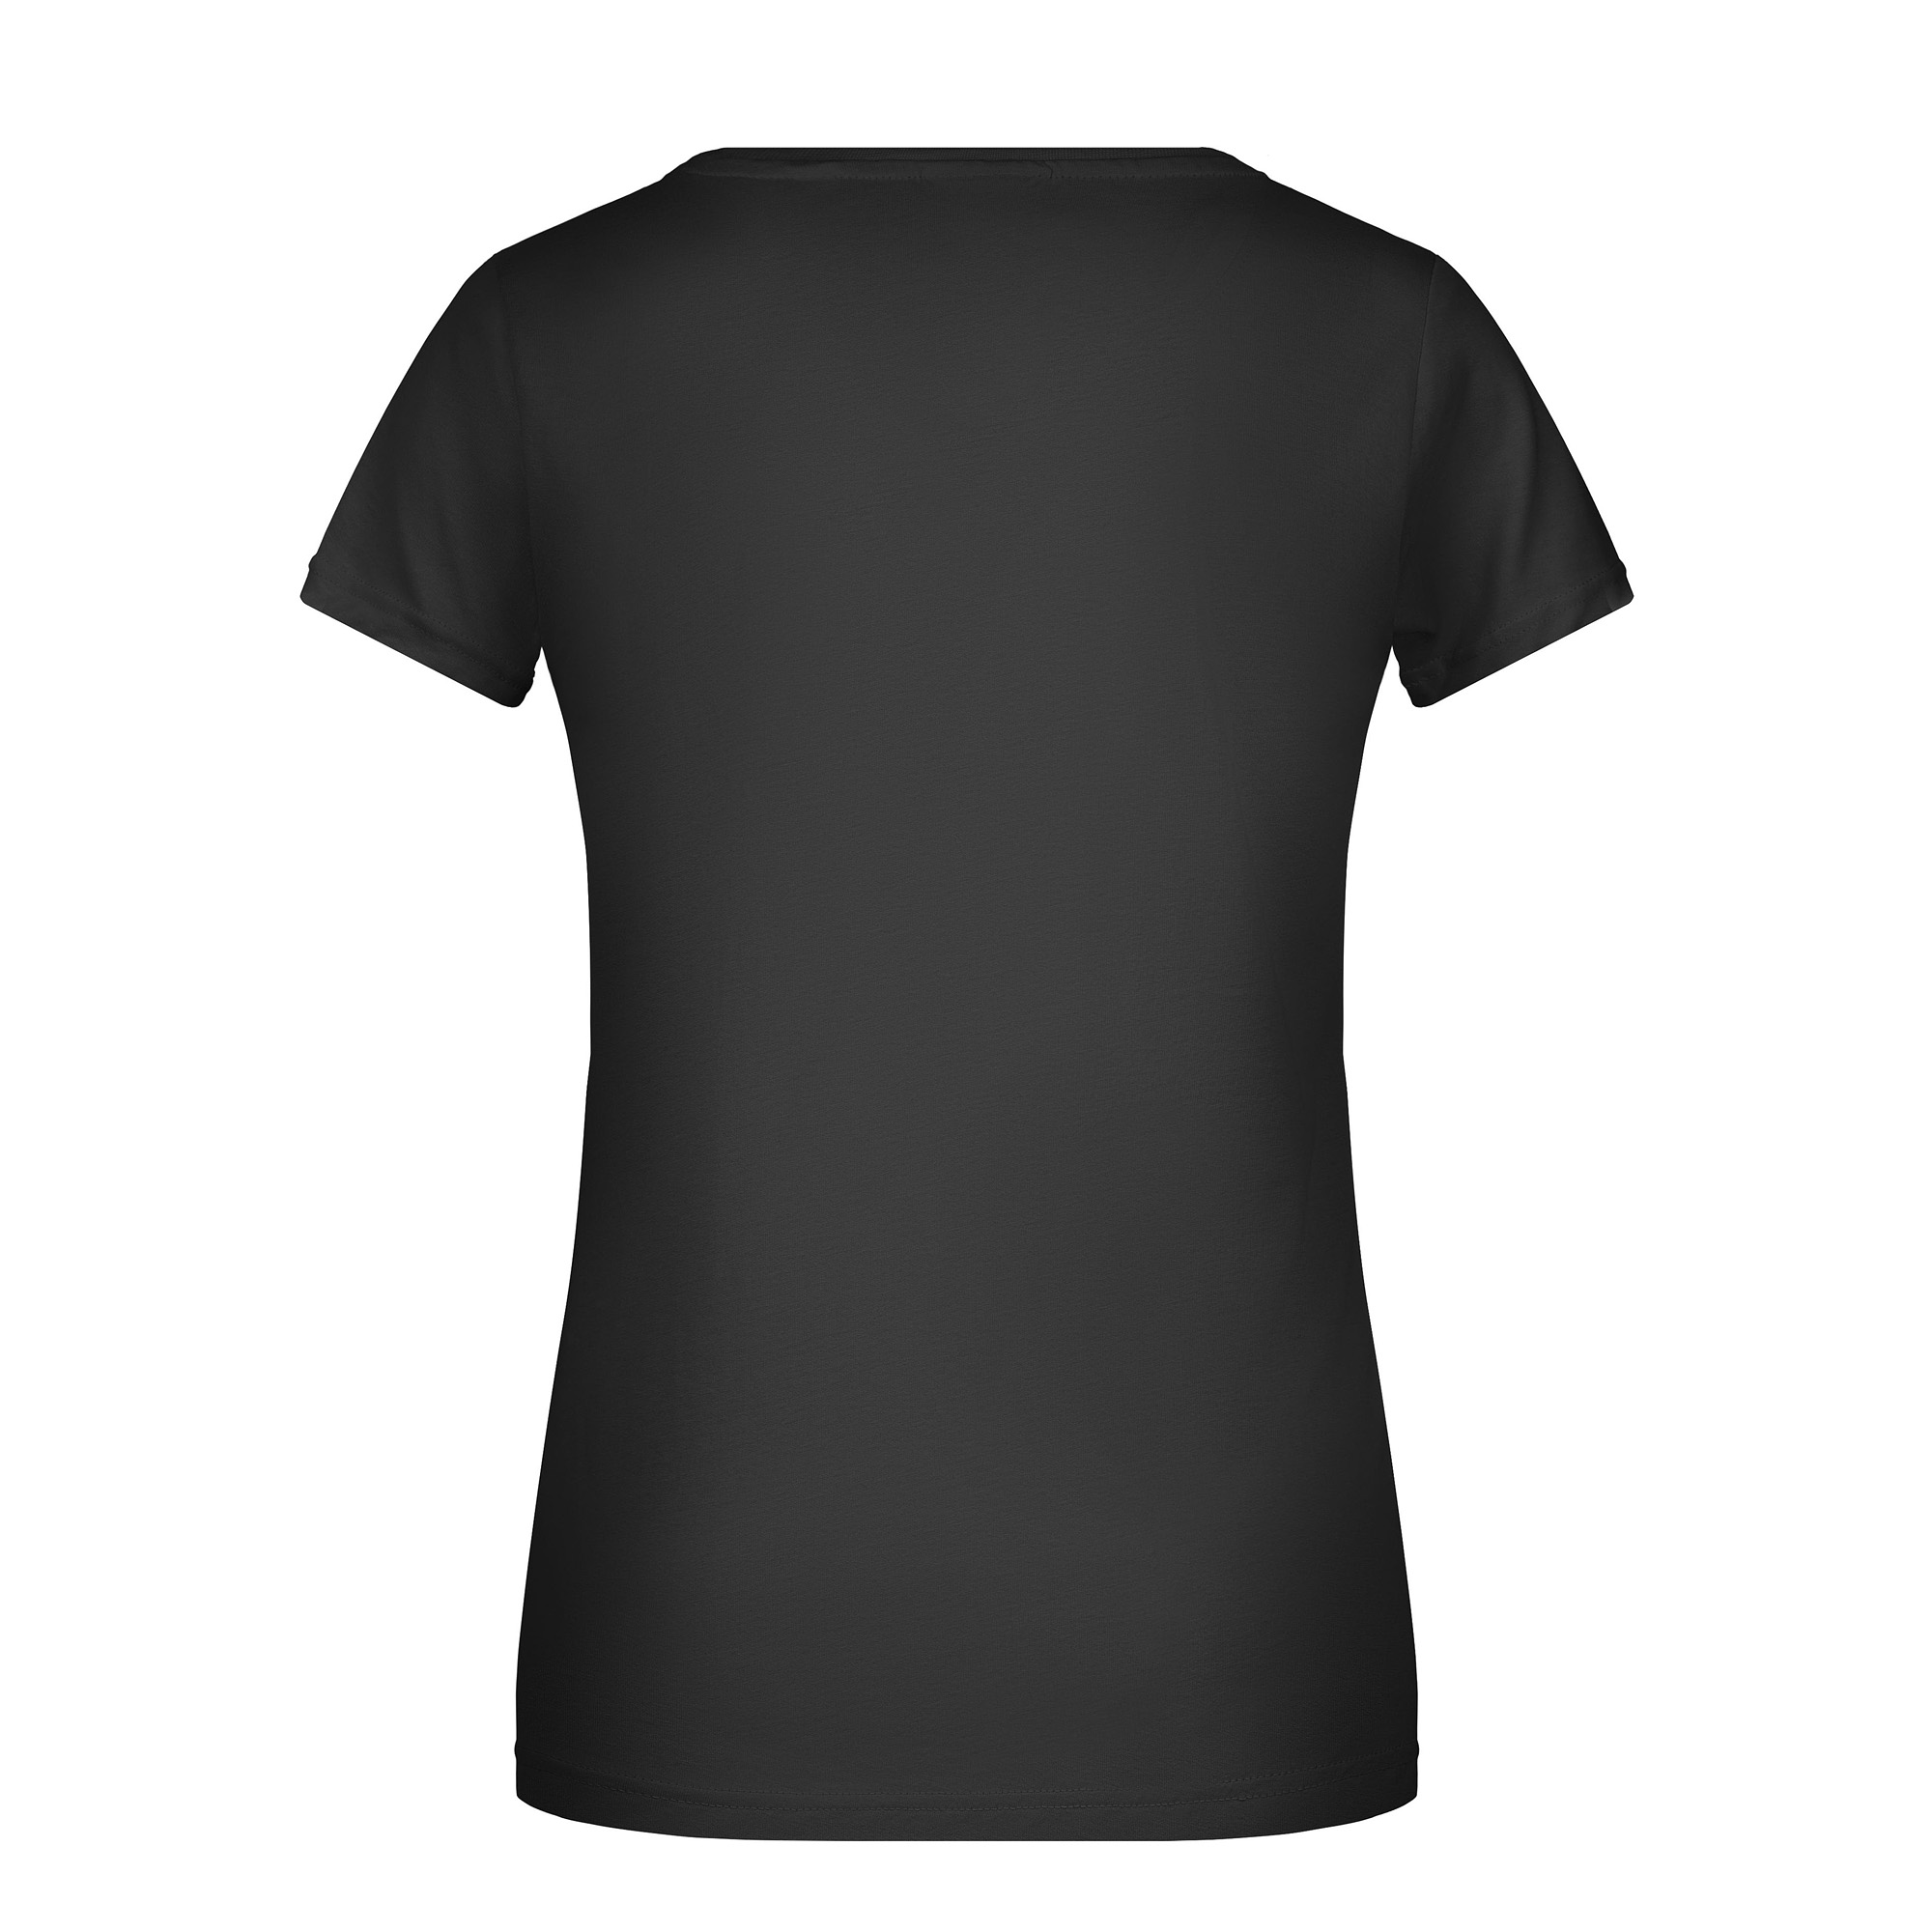 Tatonka Mountain T-Shirt Women black schwarz T-Shirts 4013236314892